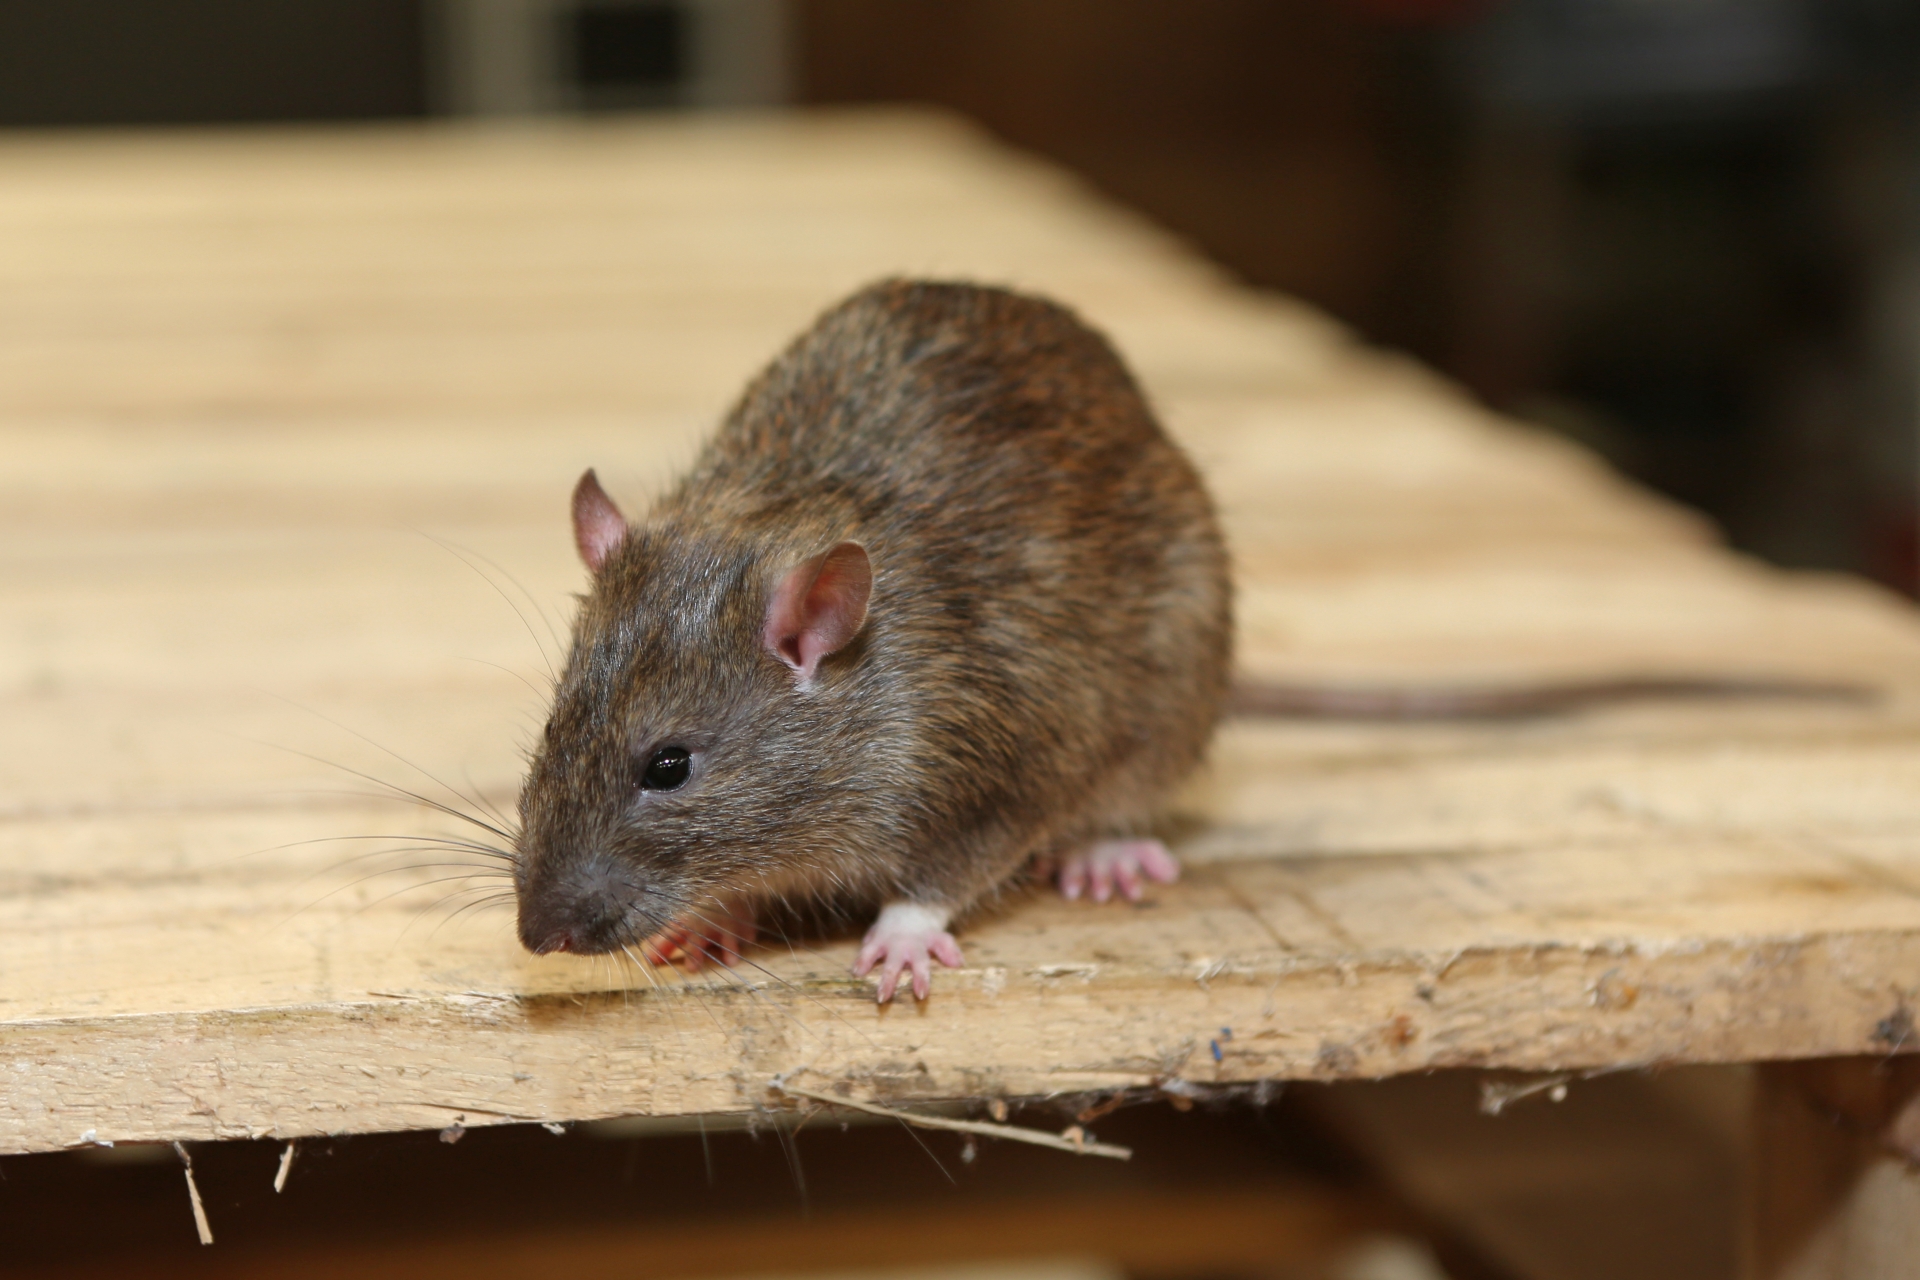 Rat extermination, Pest Control in Morden Park, Morden, SM4. Call Now 020 8166 9746